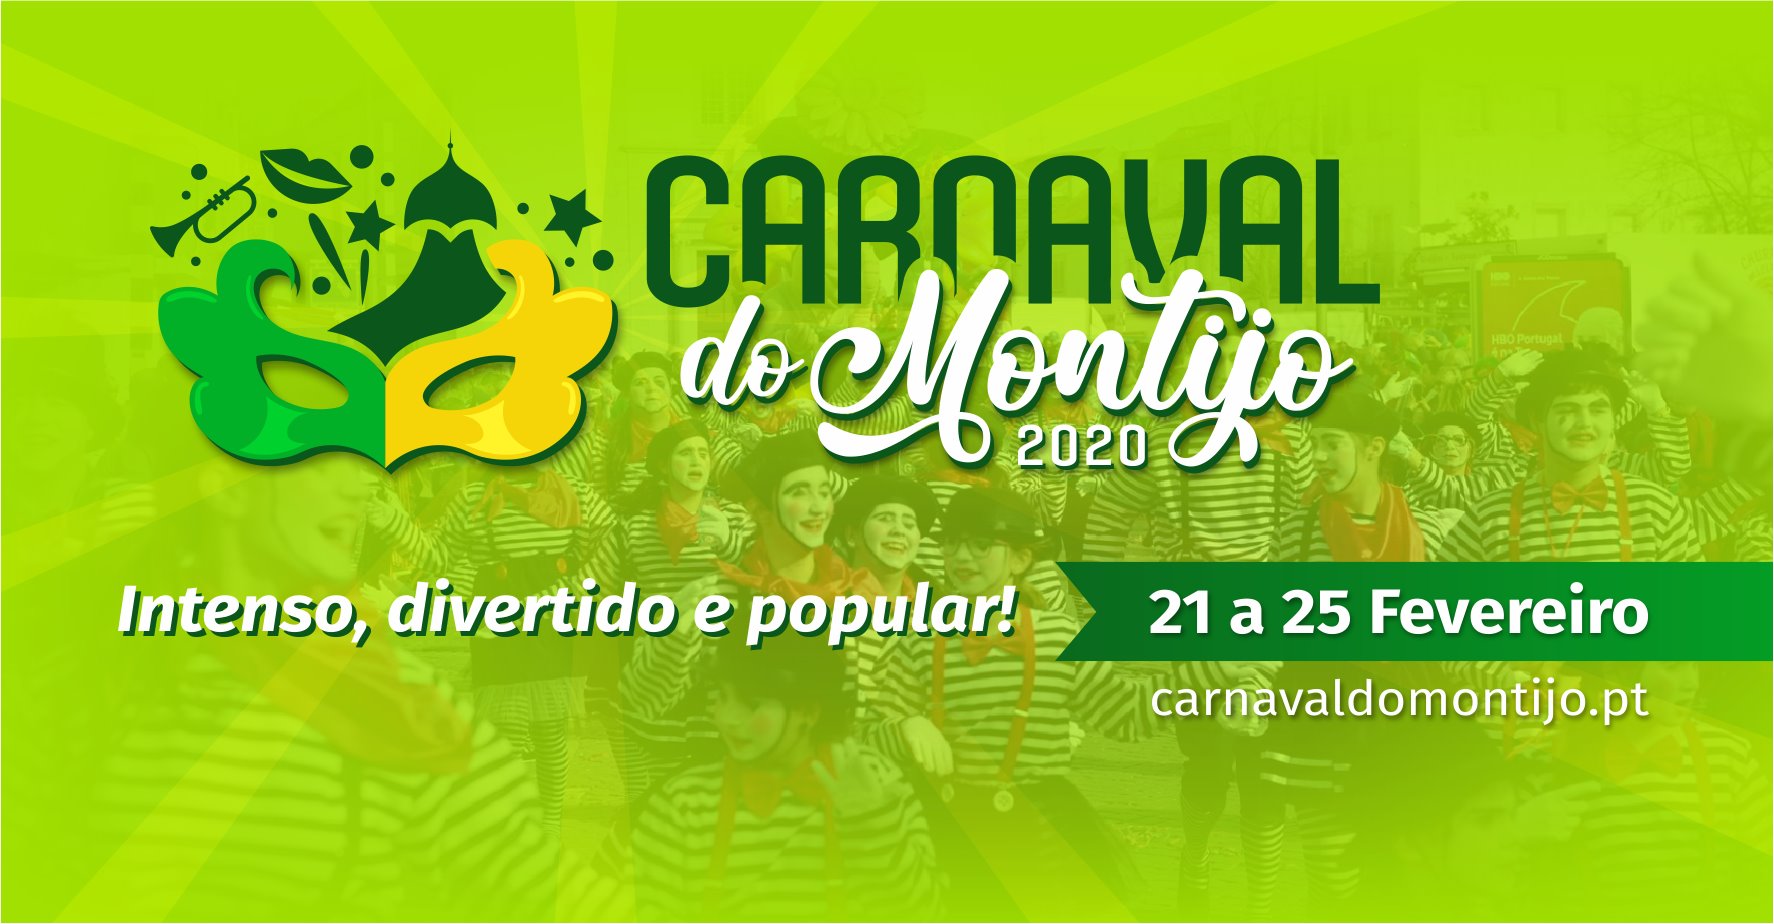 Carnaval do Montijo 2020